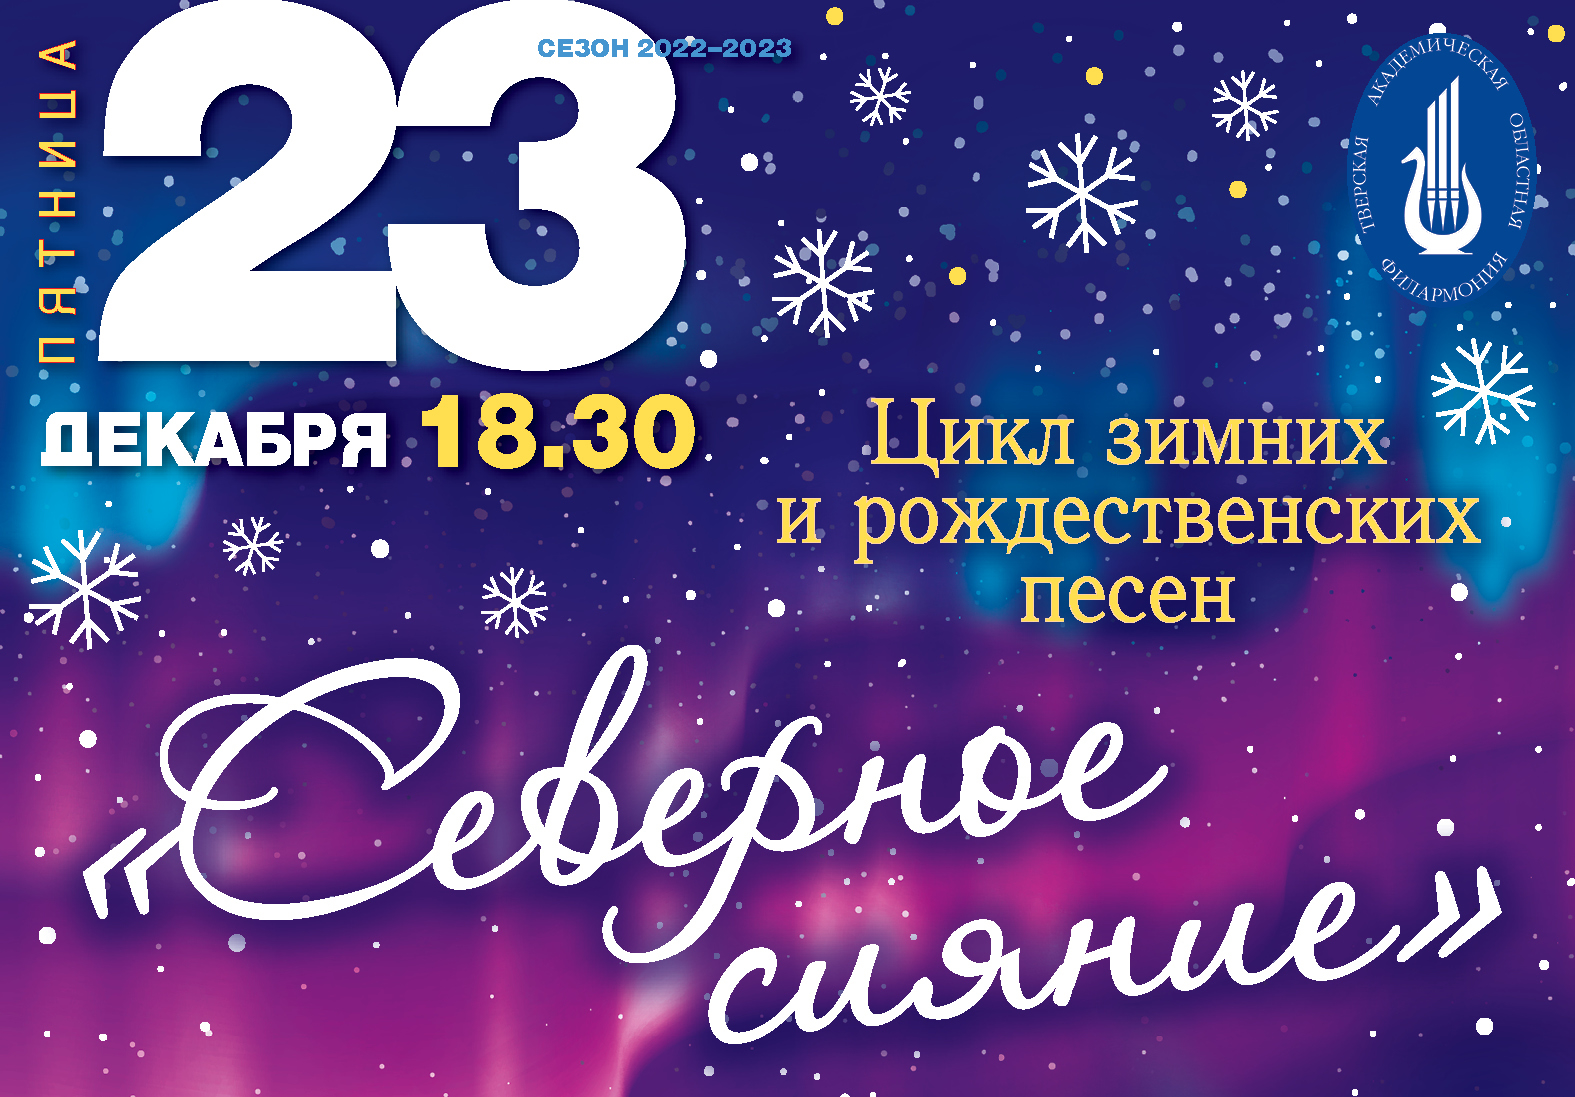 Концерт "Северное сияние" объединит зимние и рождественские песни русских и зарубежных композиторов